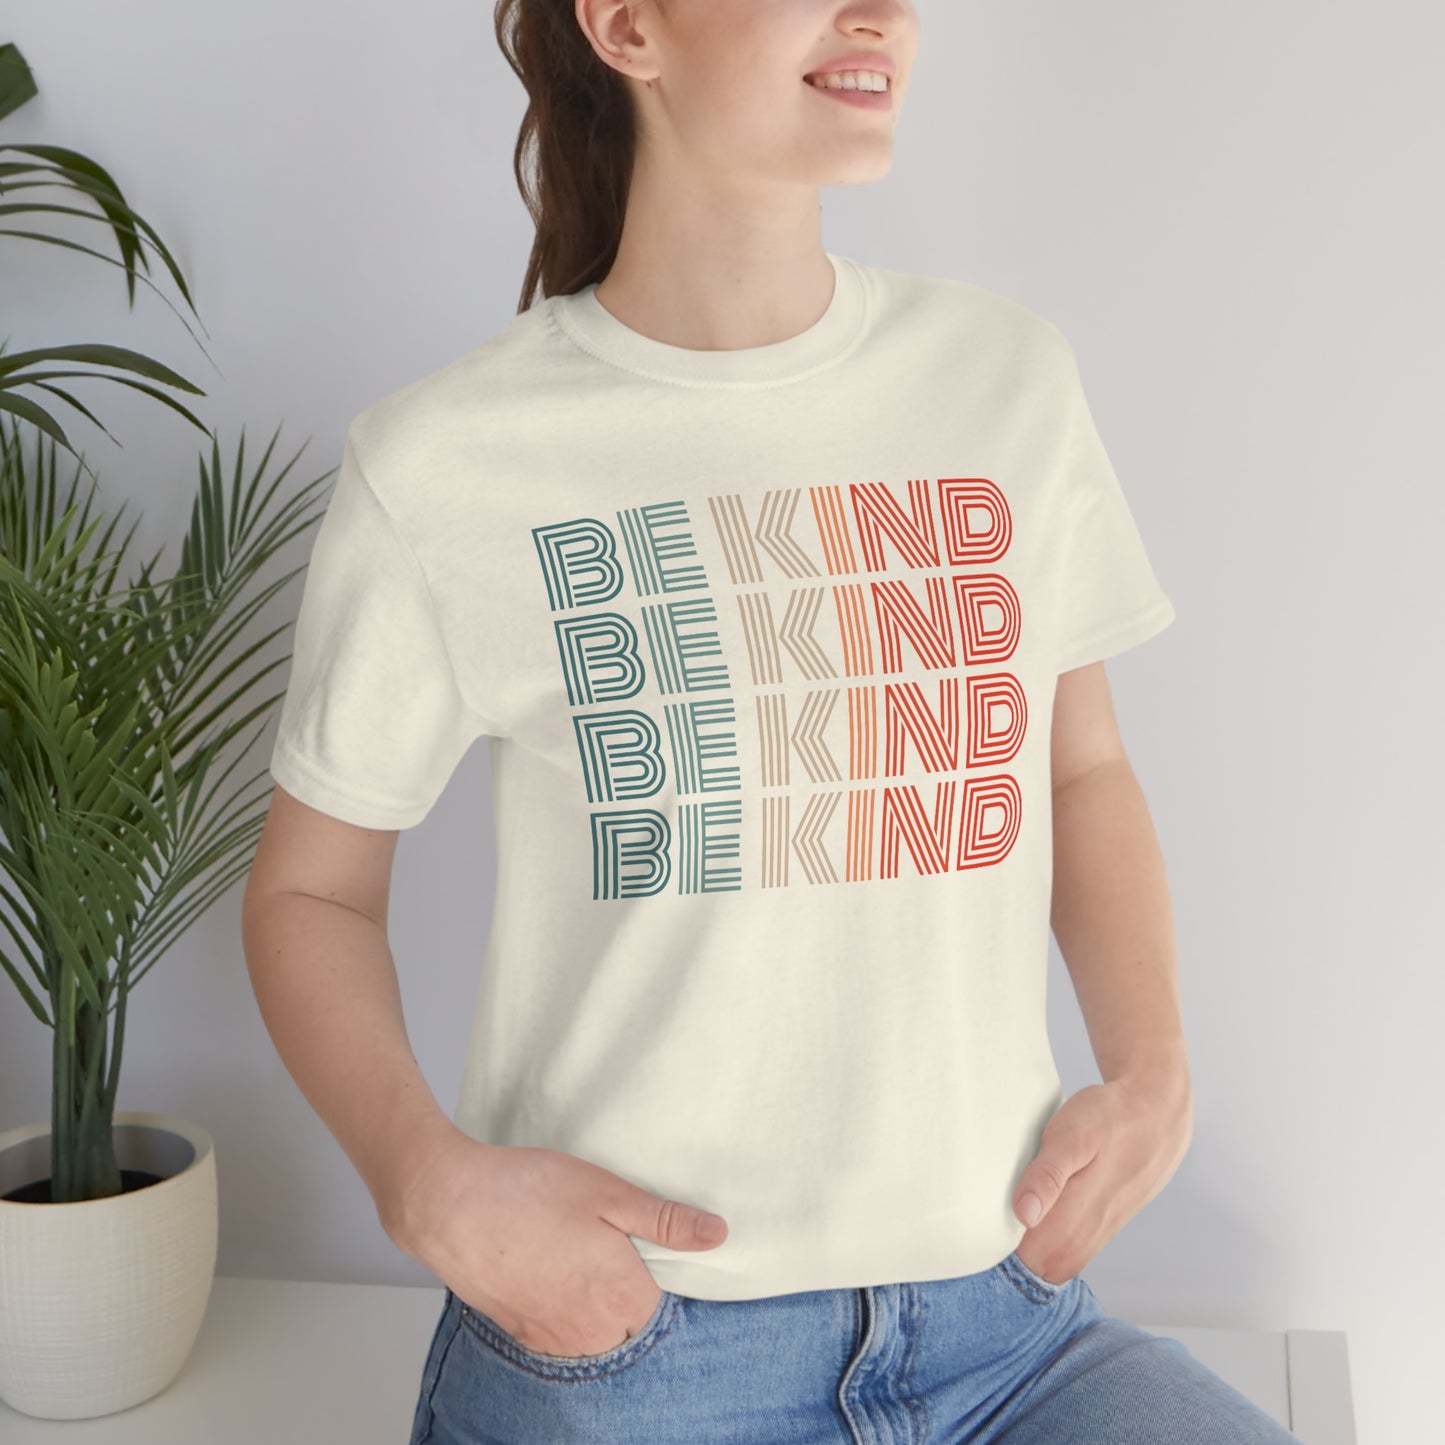 Be Kind Shirt for Women, Kindness Shirt, Retro Be Kind TShirt, Inspirational Shirt for Teachers, Cute Kindergarten Shirt, Teacher Shirt